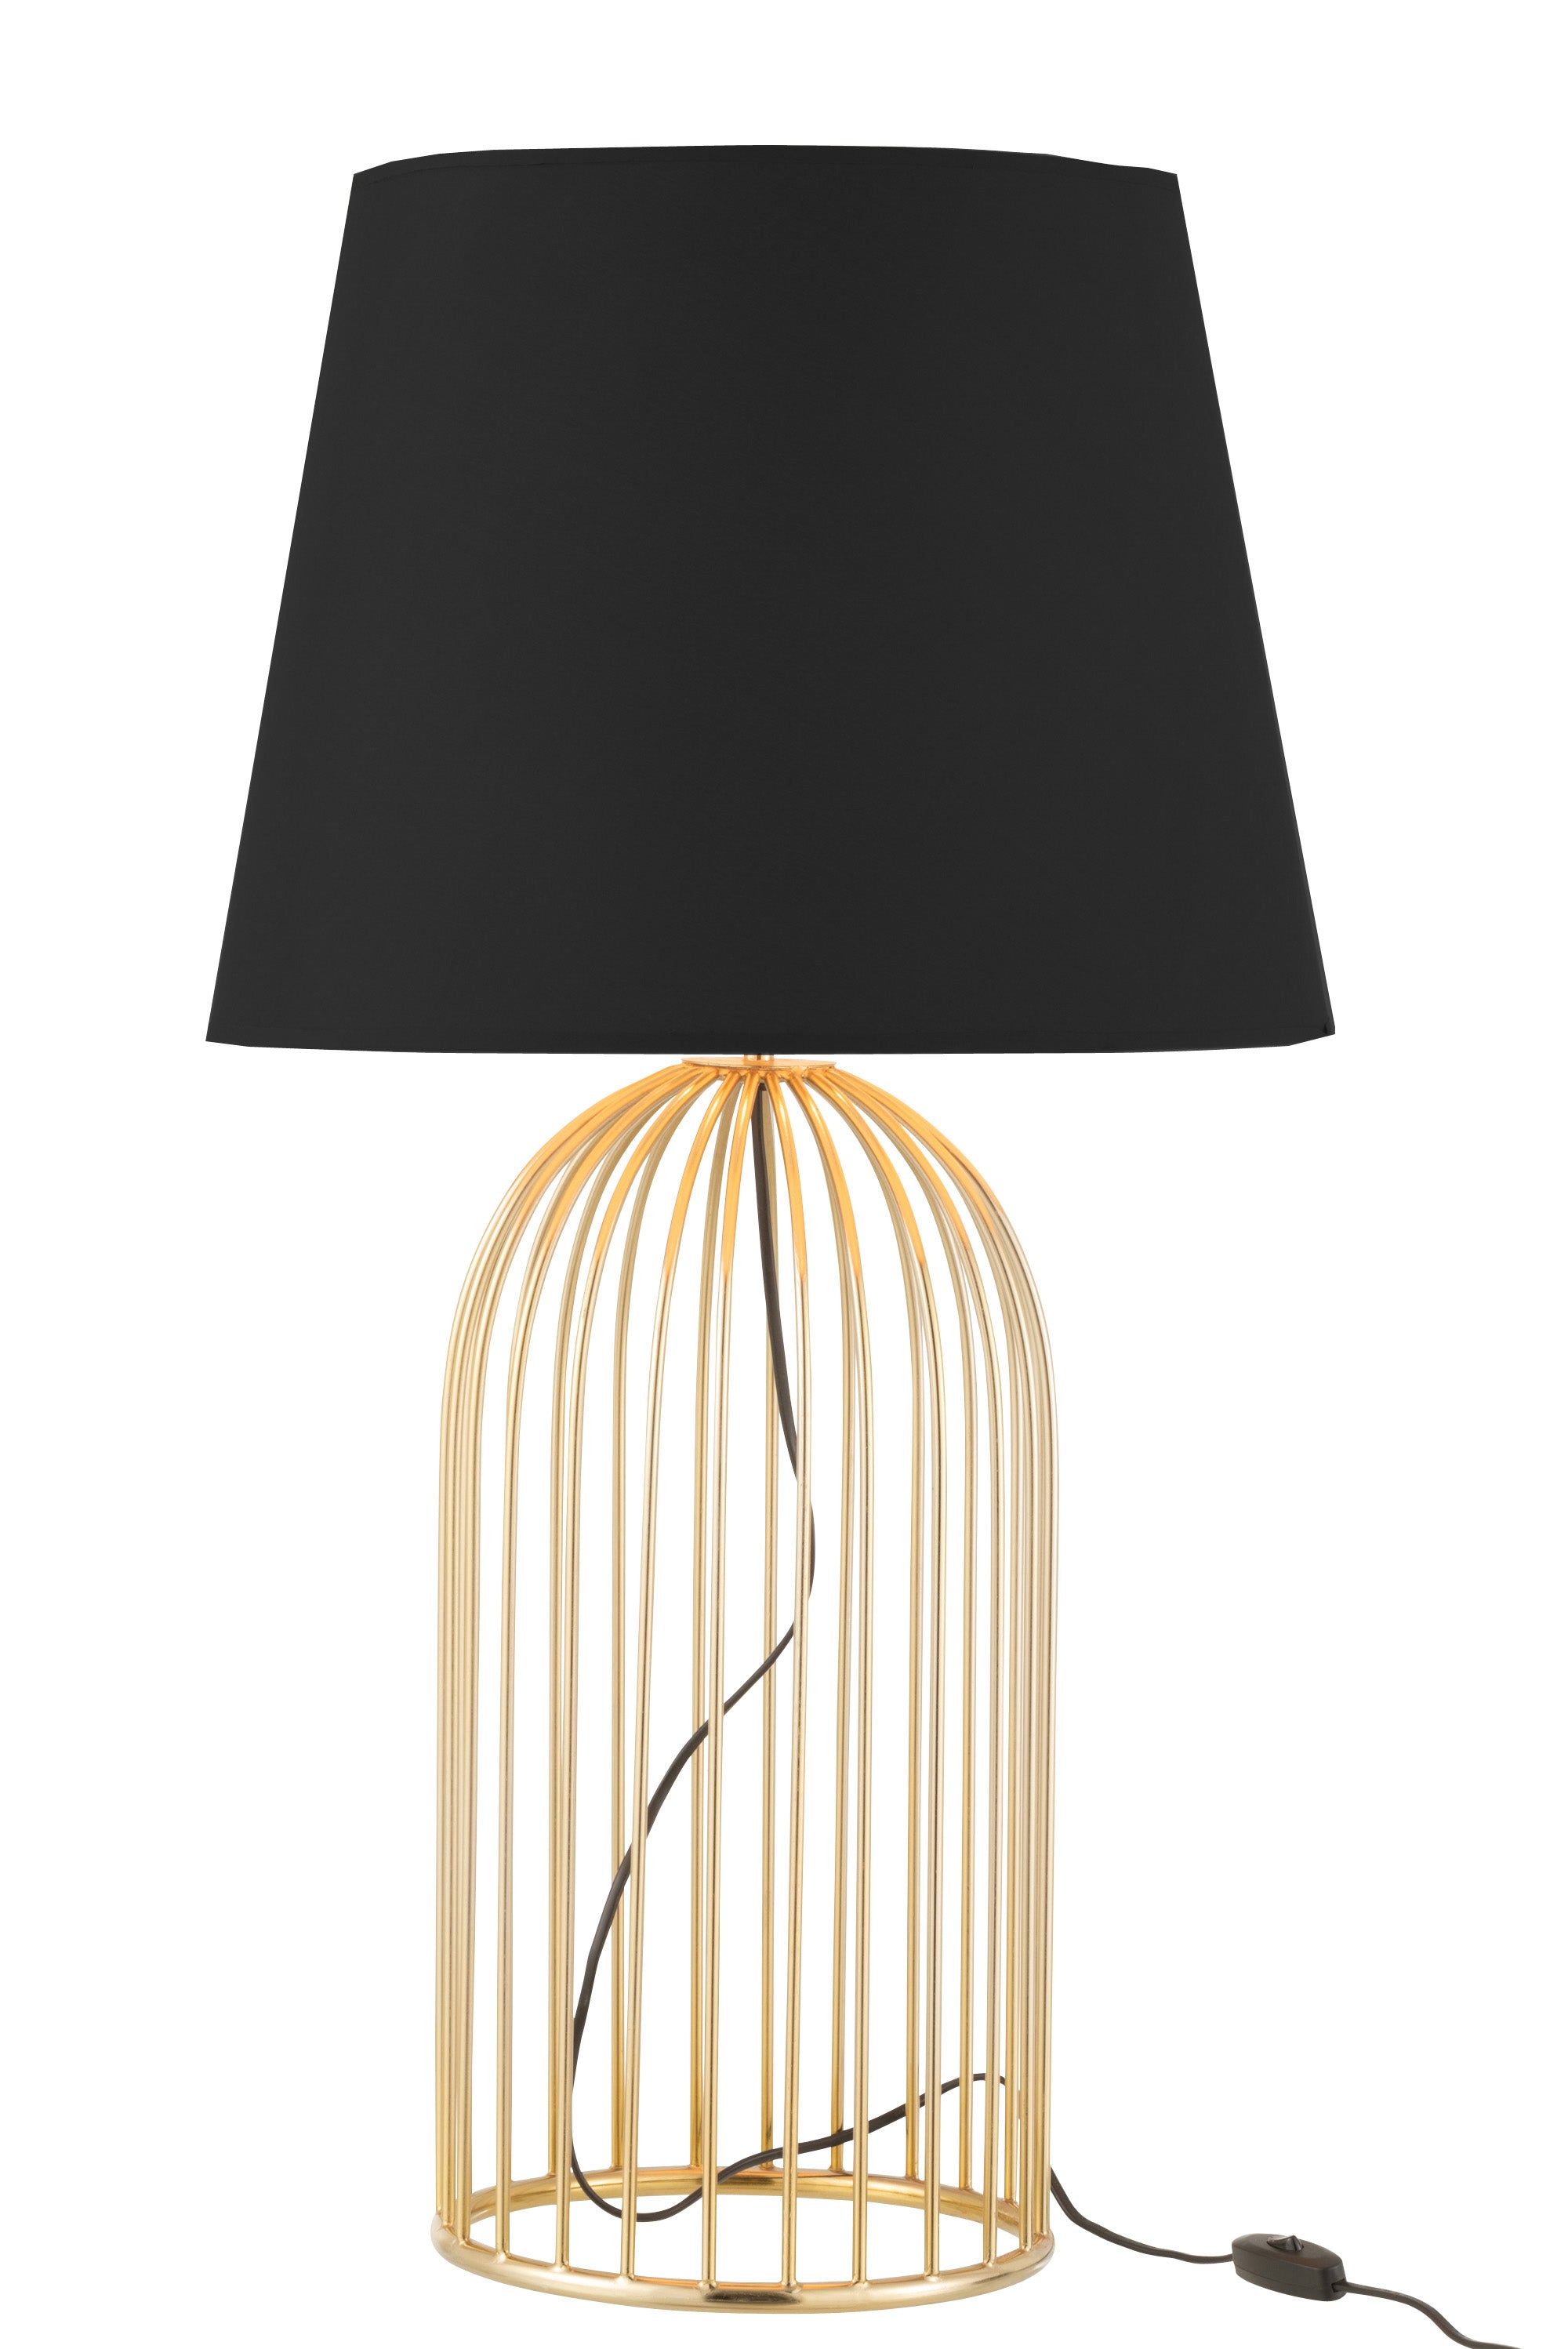 Tischlampe mit einem kuppelförmigen Sockel aus goldenen Metallstreben, darüber ein runder, schwarzer Lampenschirm..